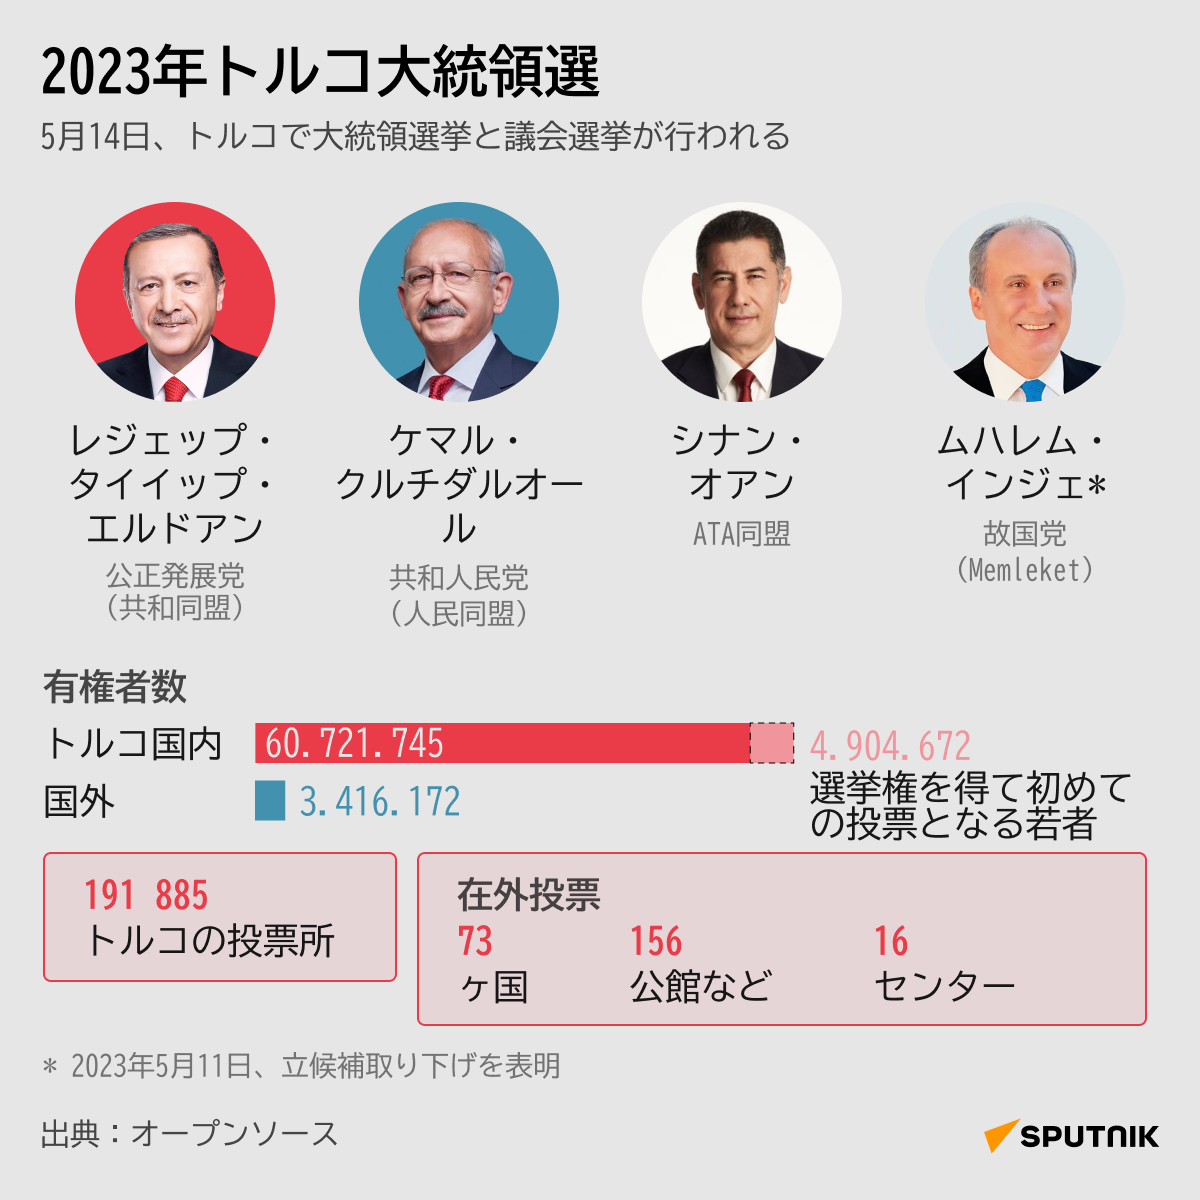 2023年トルコ大統領選 - Sputnik 日本